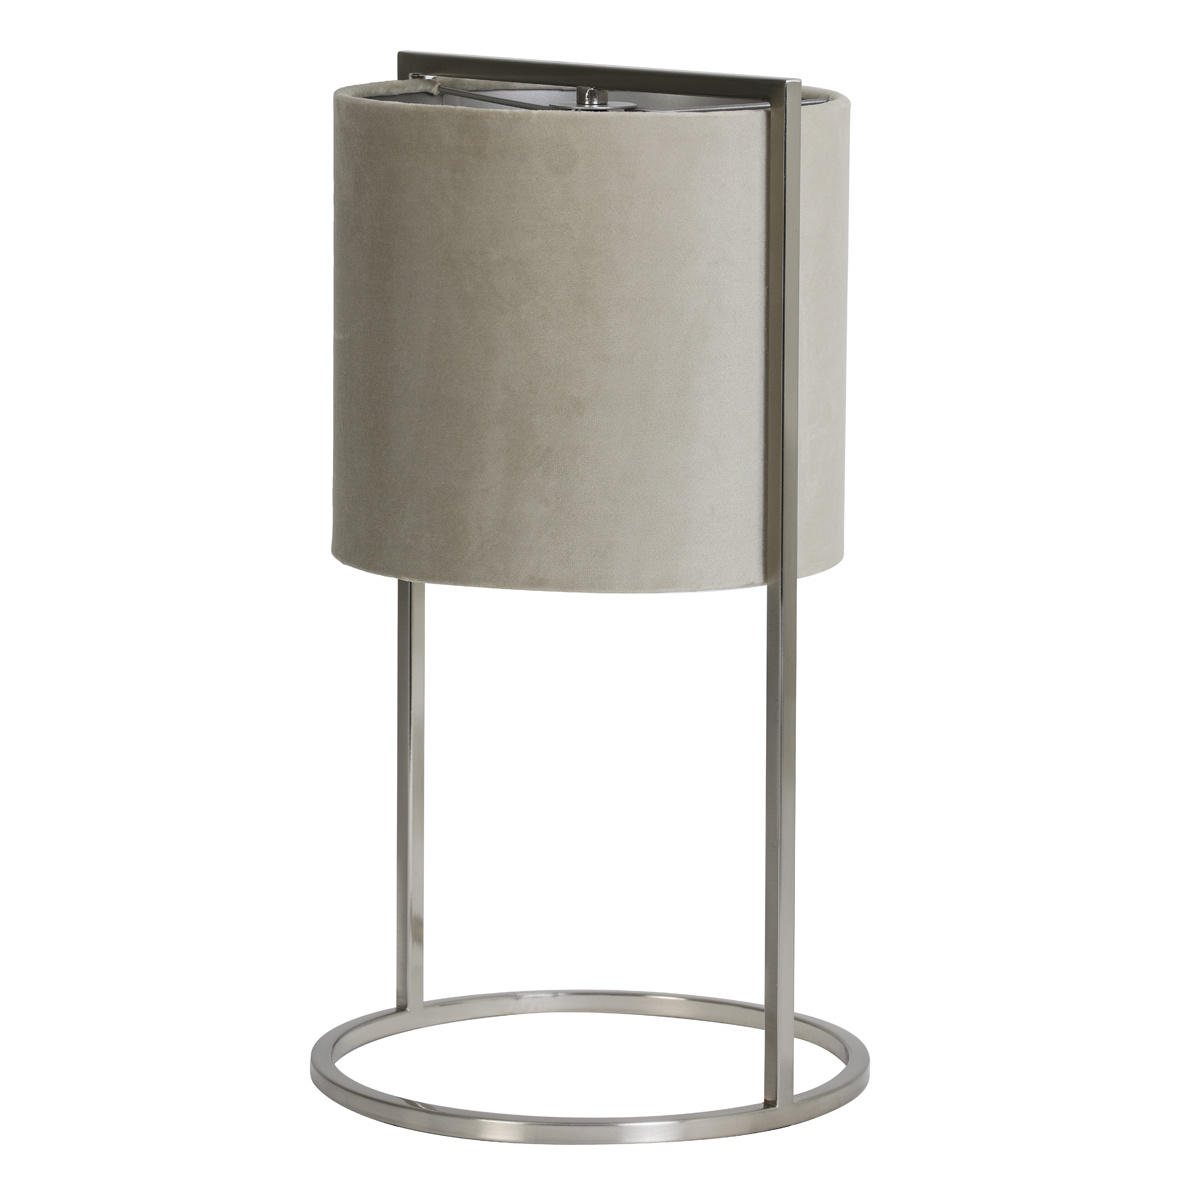 Velvet and chrome luxury table lamp "Ceylo"